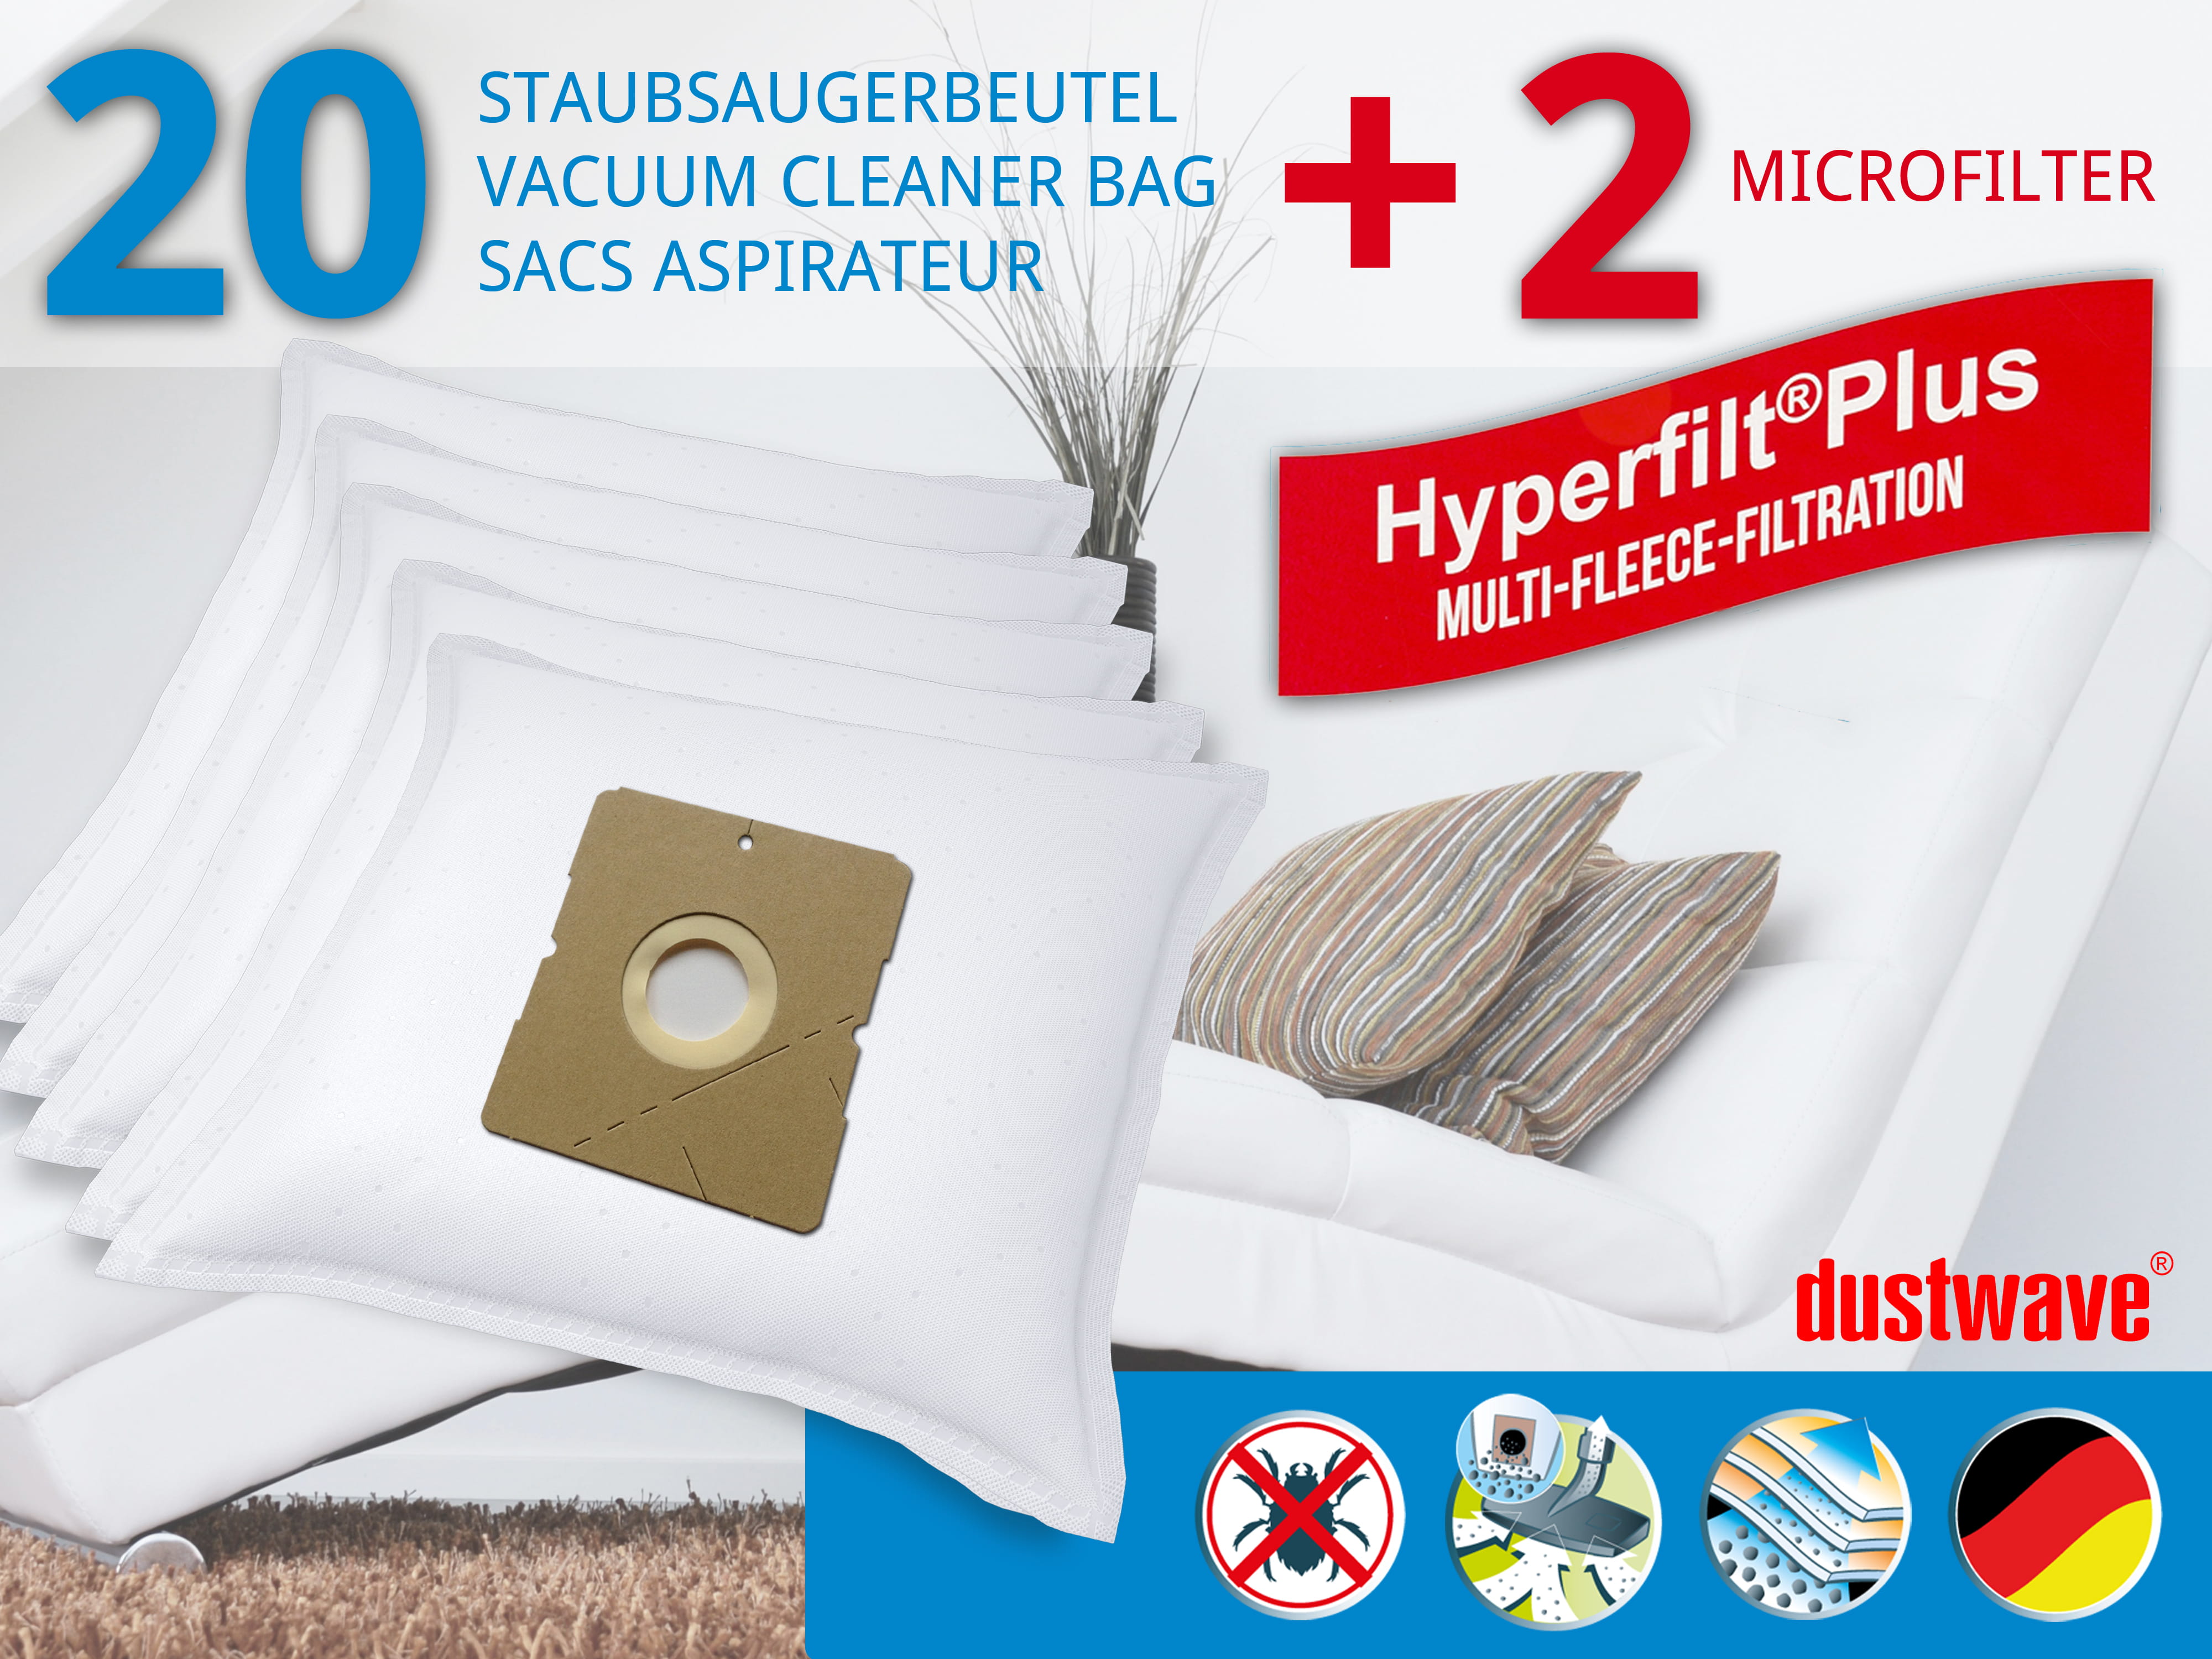 Dustwave® 20 Staubsaugerbeutel für AFK BS 2000 W 14 - hocheffizient, mehrlagiges Mikrovlies mit Hygieneverschluss - Made in Germany